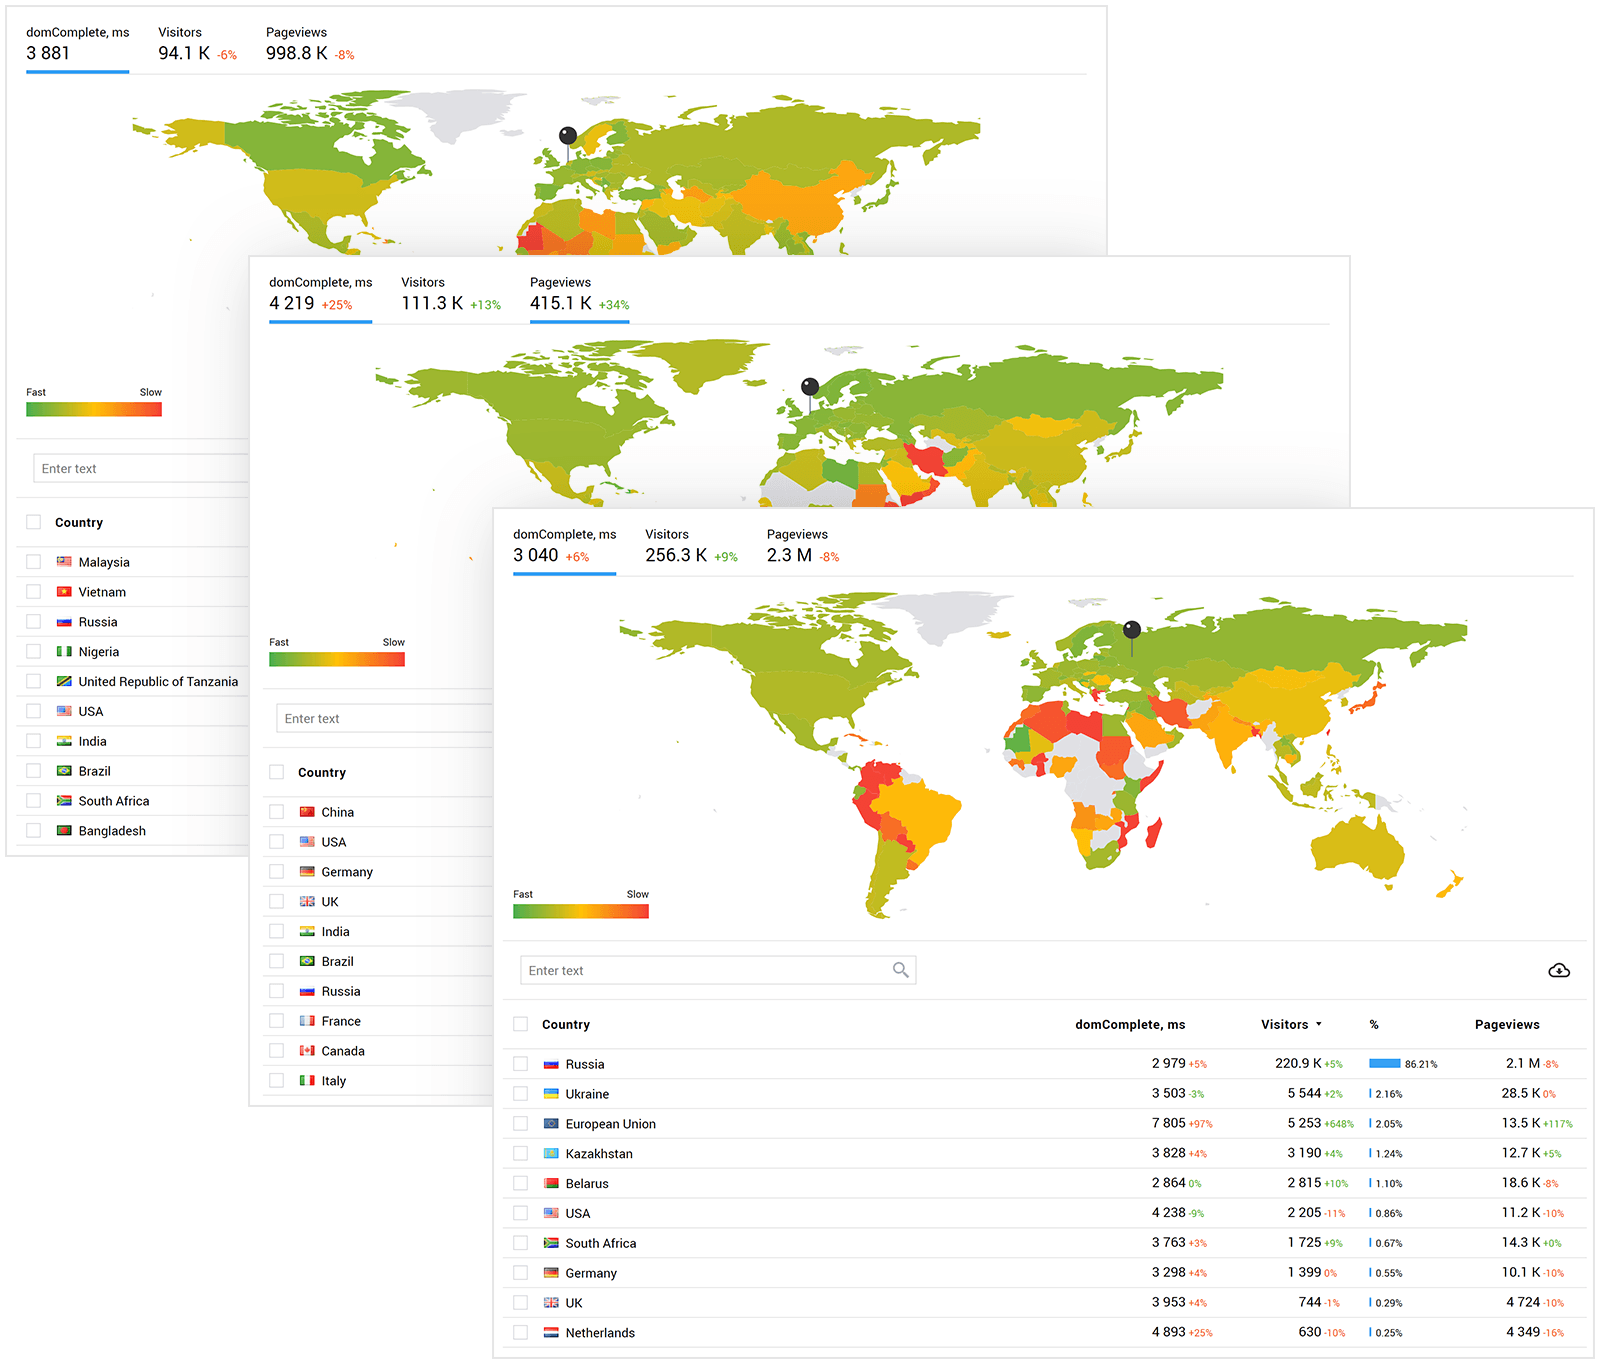 Velocidade média de carregamento por país